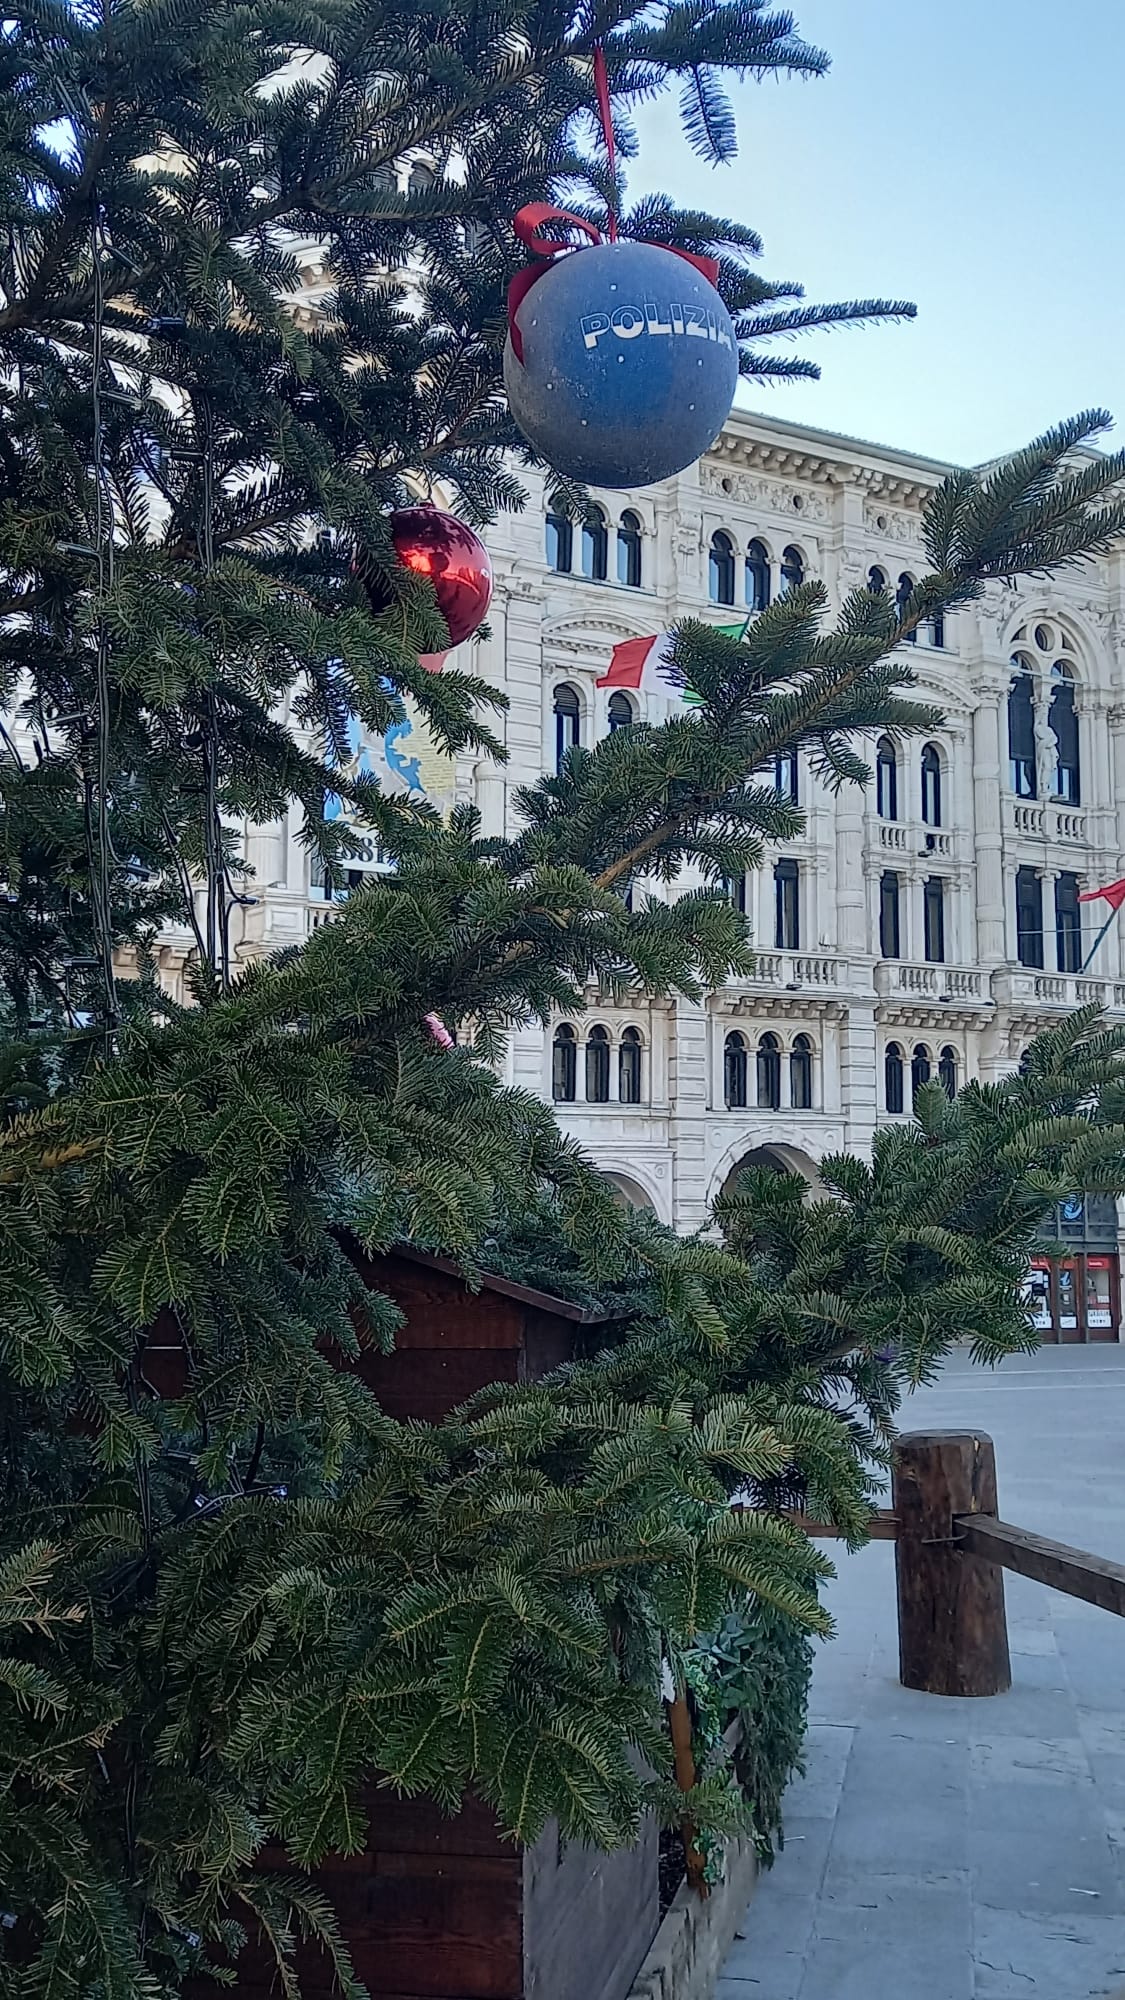 Gli alberi di Natale nelle città d’Italia con le decorazioni natalizie della Polizia di Stato: Trieste